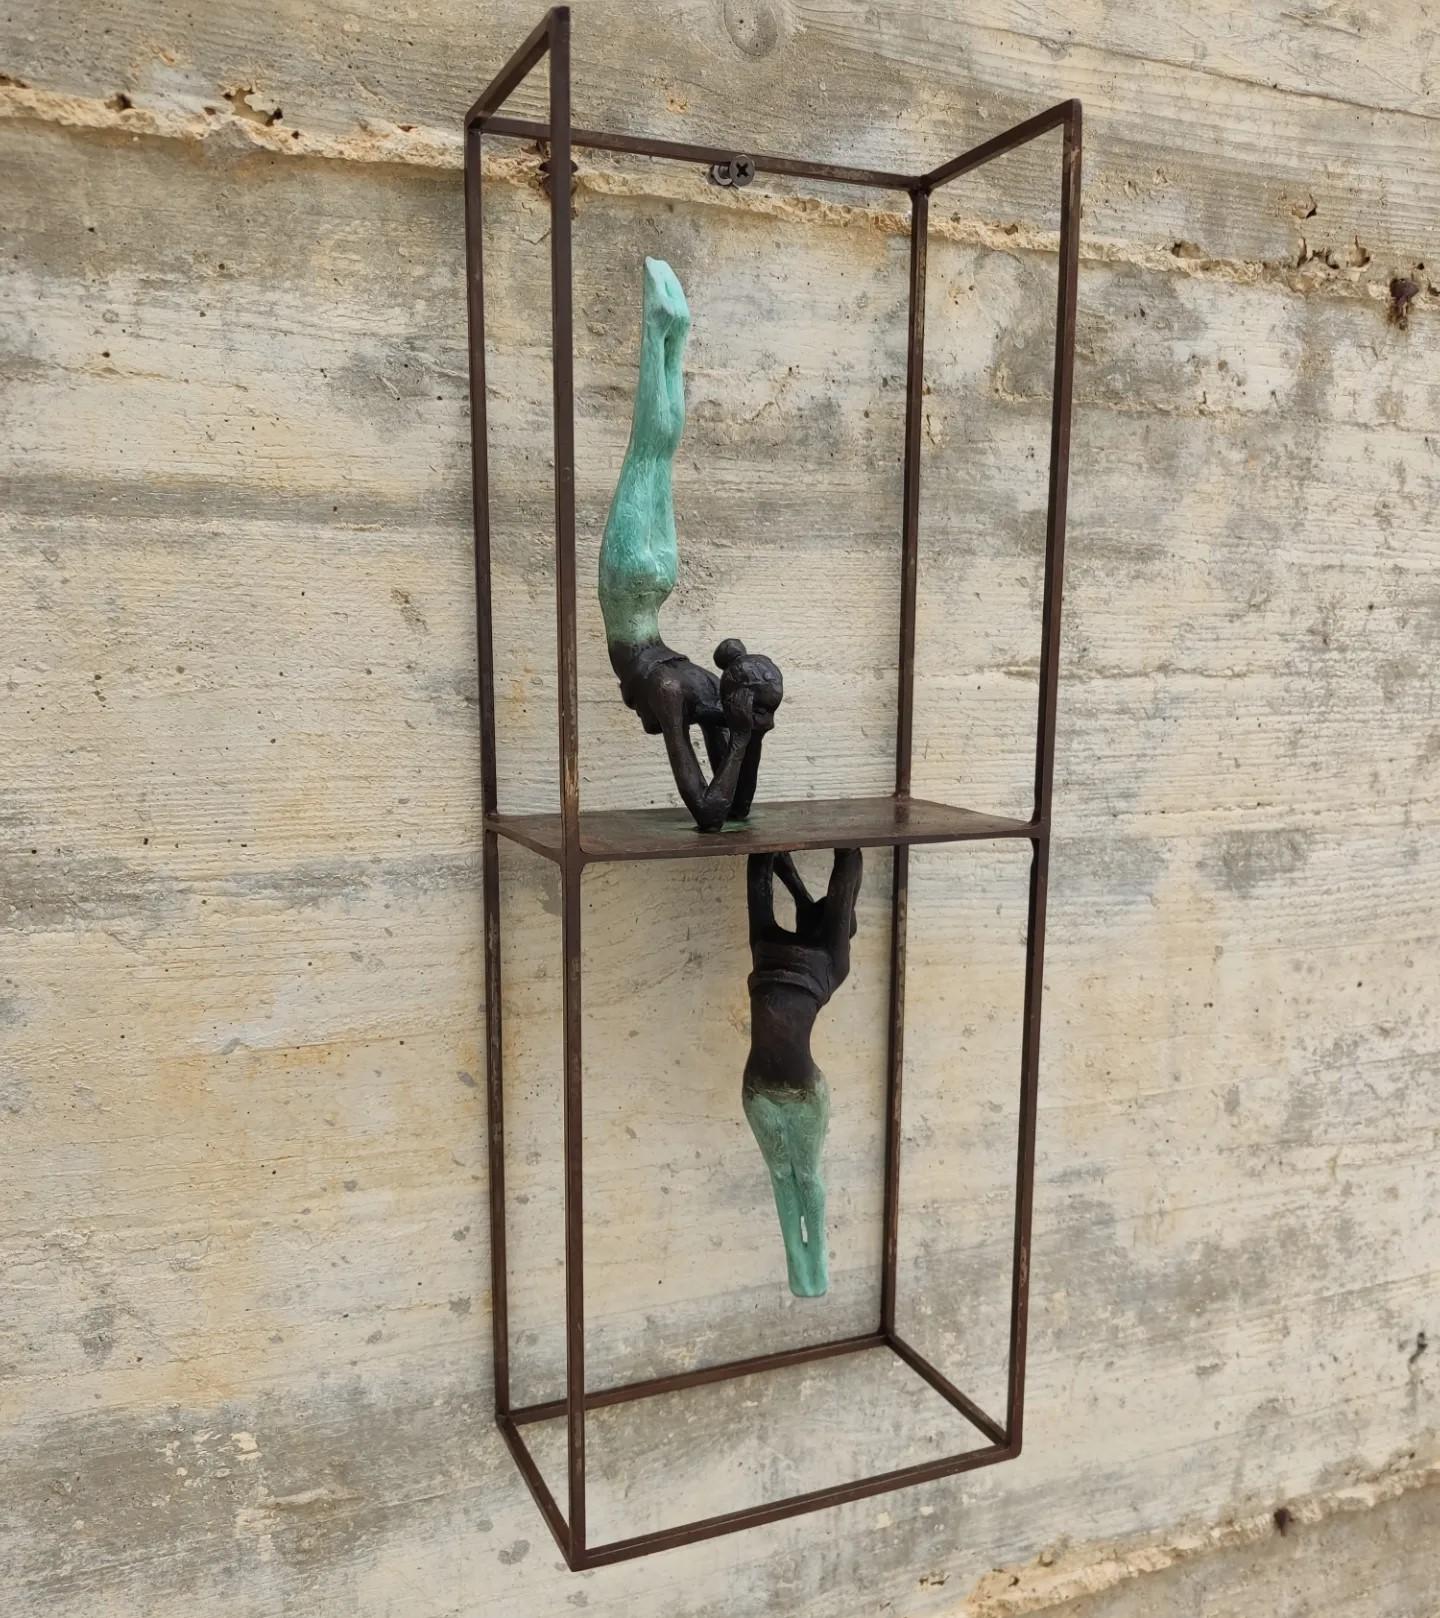 Reflex ist eine Wandtischskulptur aus Bronze, die mit einem Stahlsockel verbunden ist. Die Skulptur zeigt menschliche Figuren in einer dynamischen Pose, als wären sie mitten in der Bewegung. Die fließenden Linien der Skulptur vermitteln den Eindruck